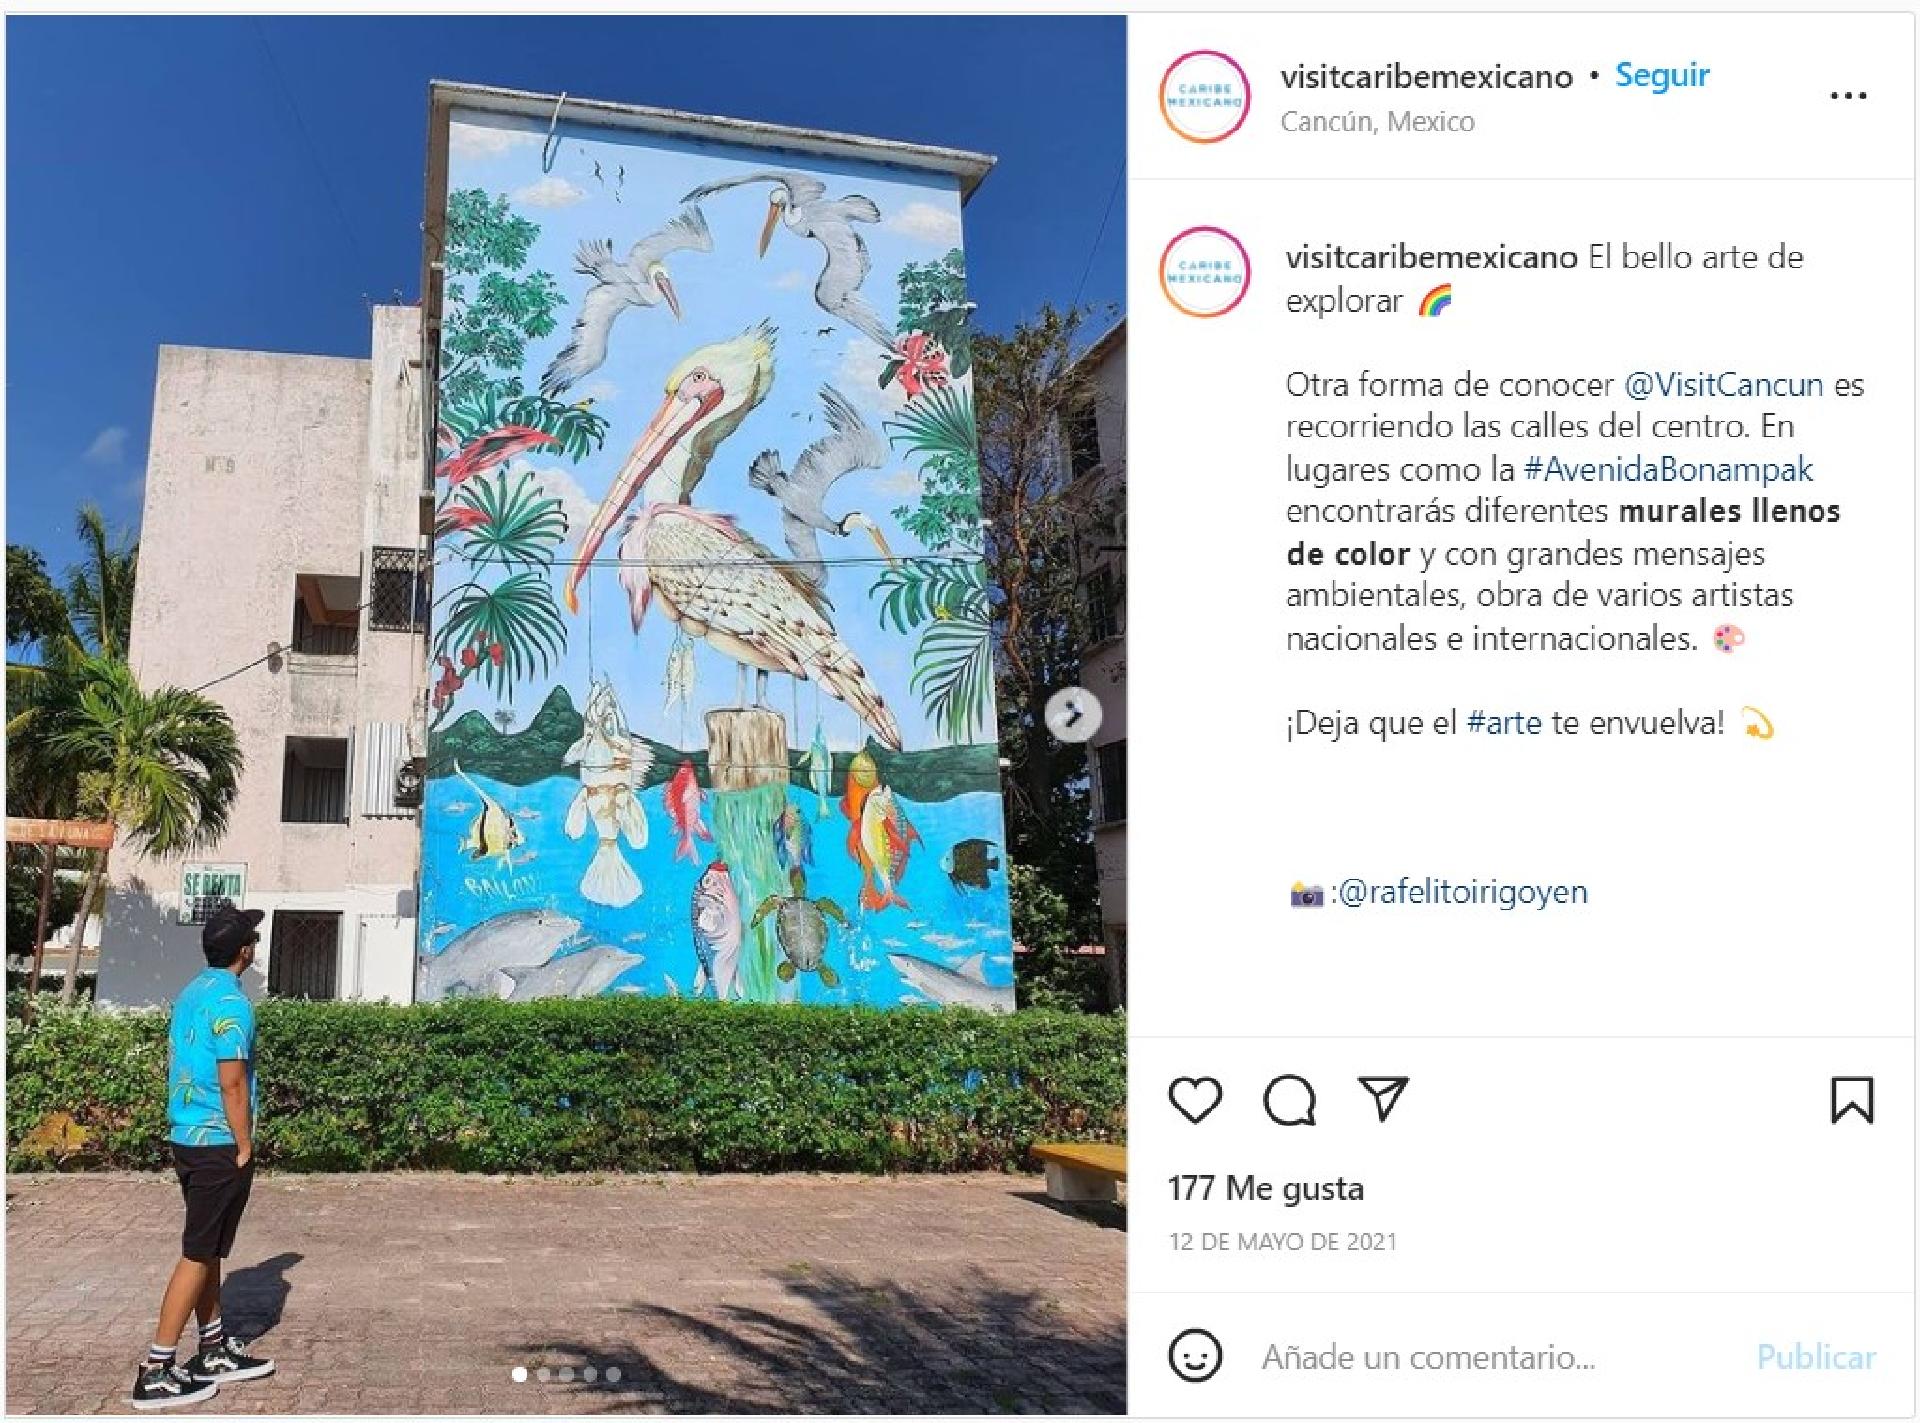 frida kahlo y el muralismo mexicano